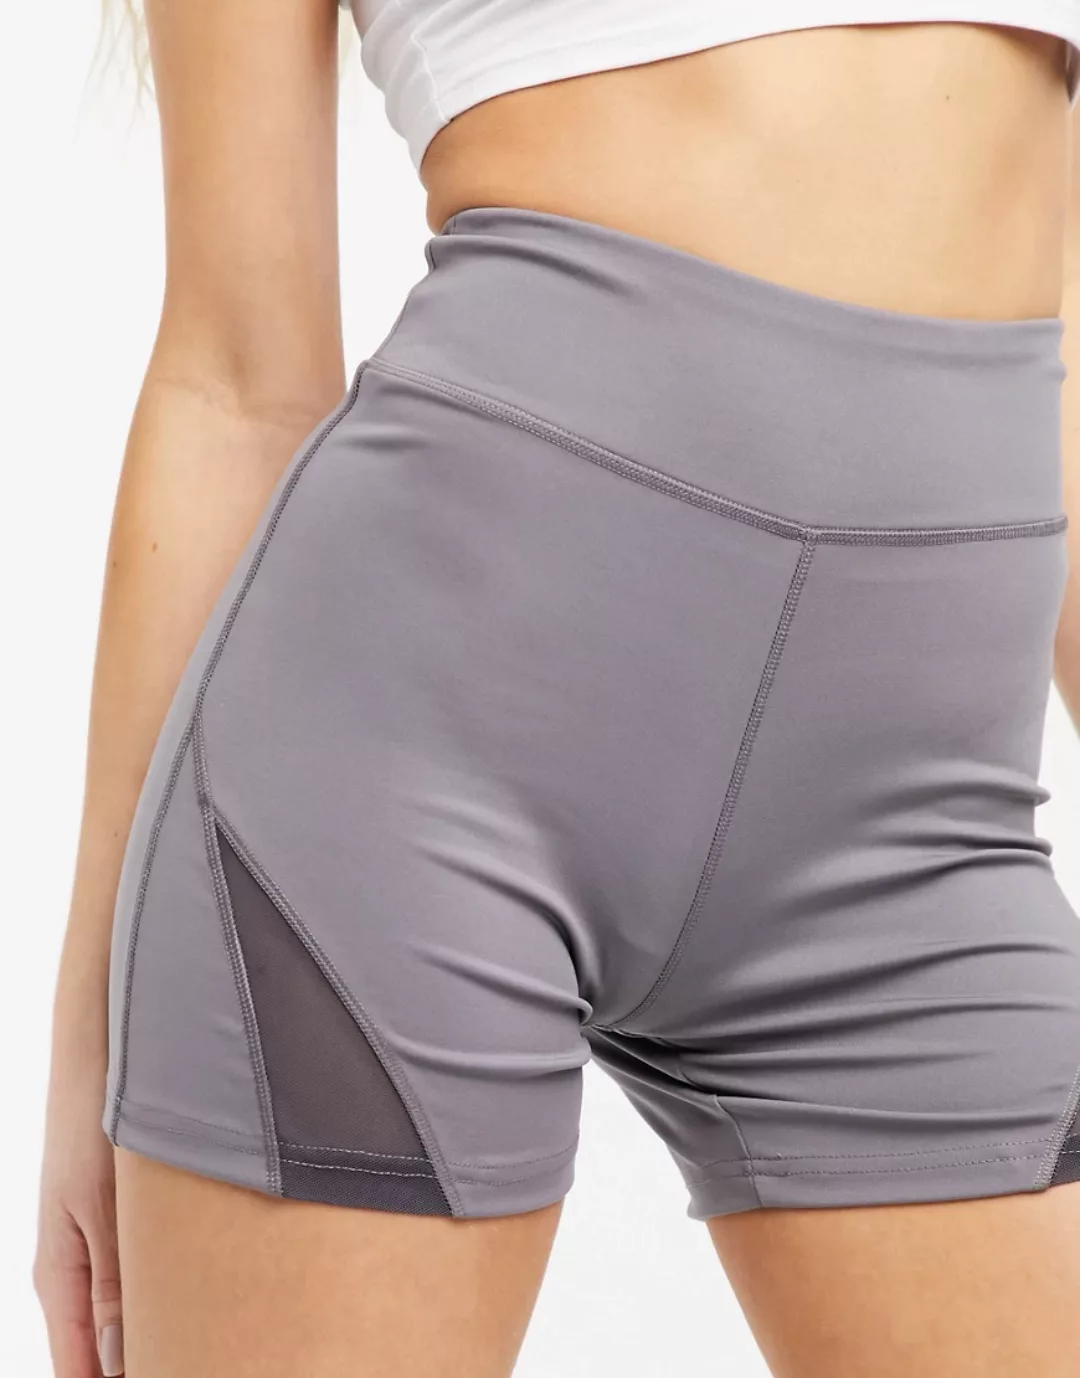 South Beach – Performance – Legging-Shorts in Grau-Braun günstig online kaufen